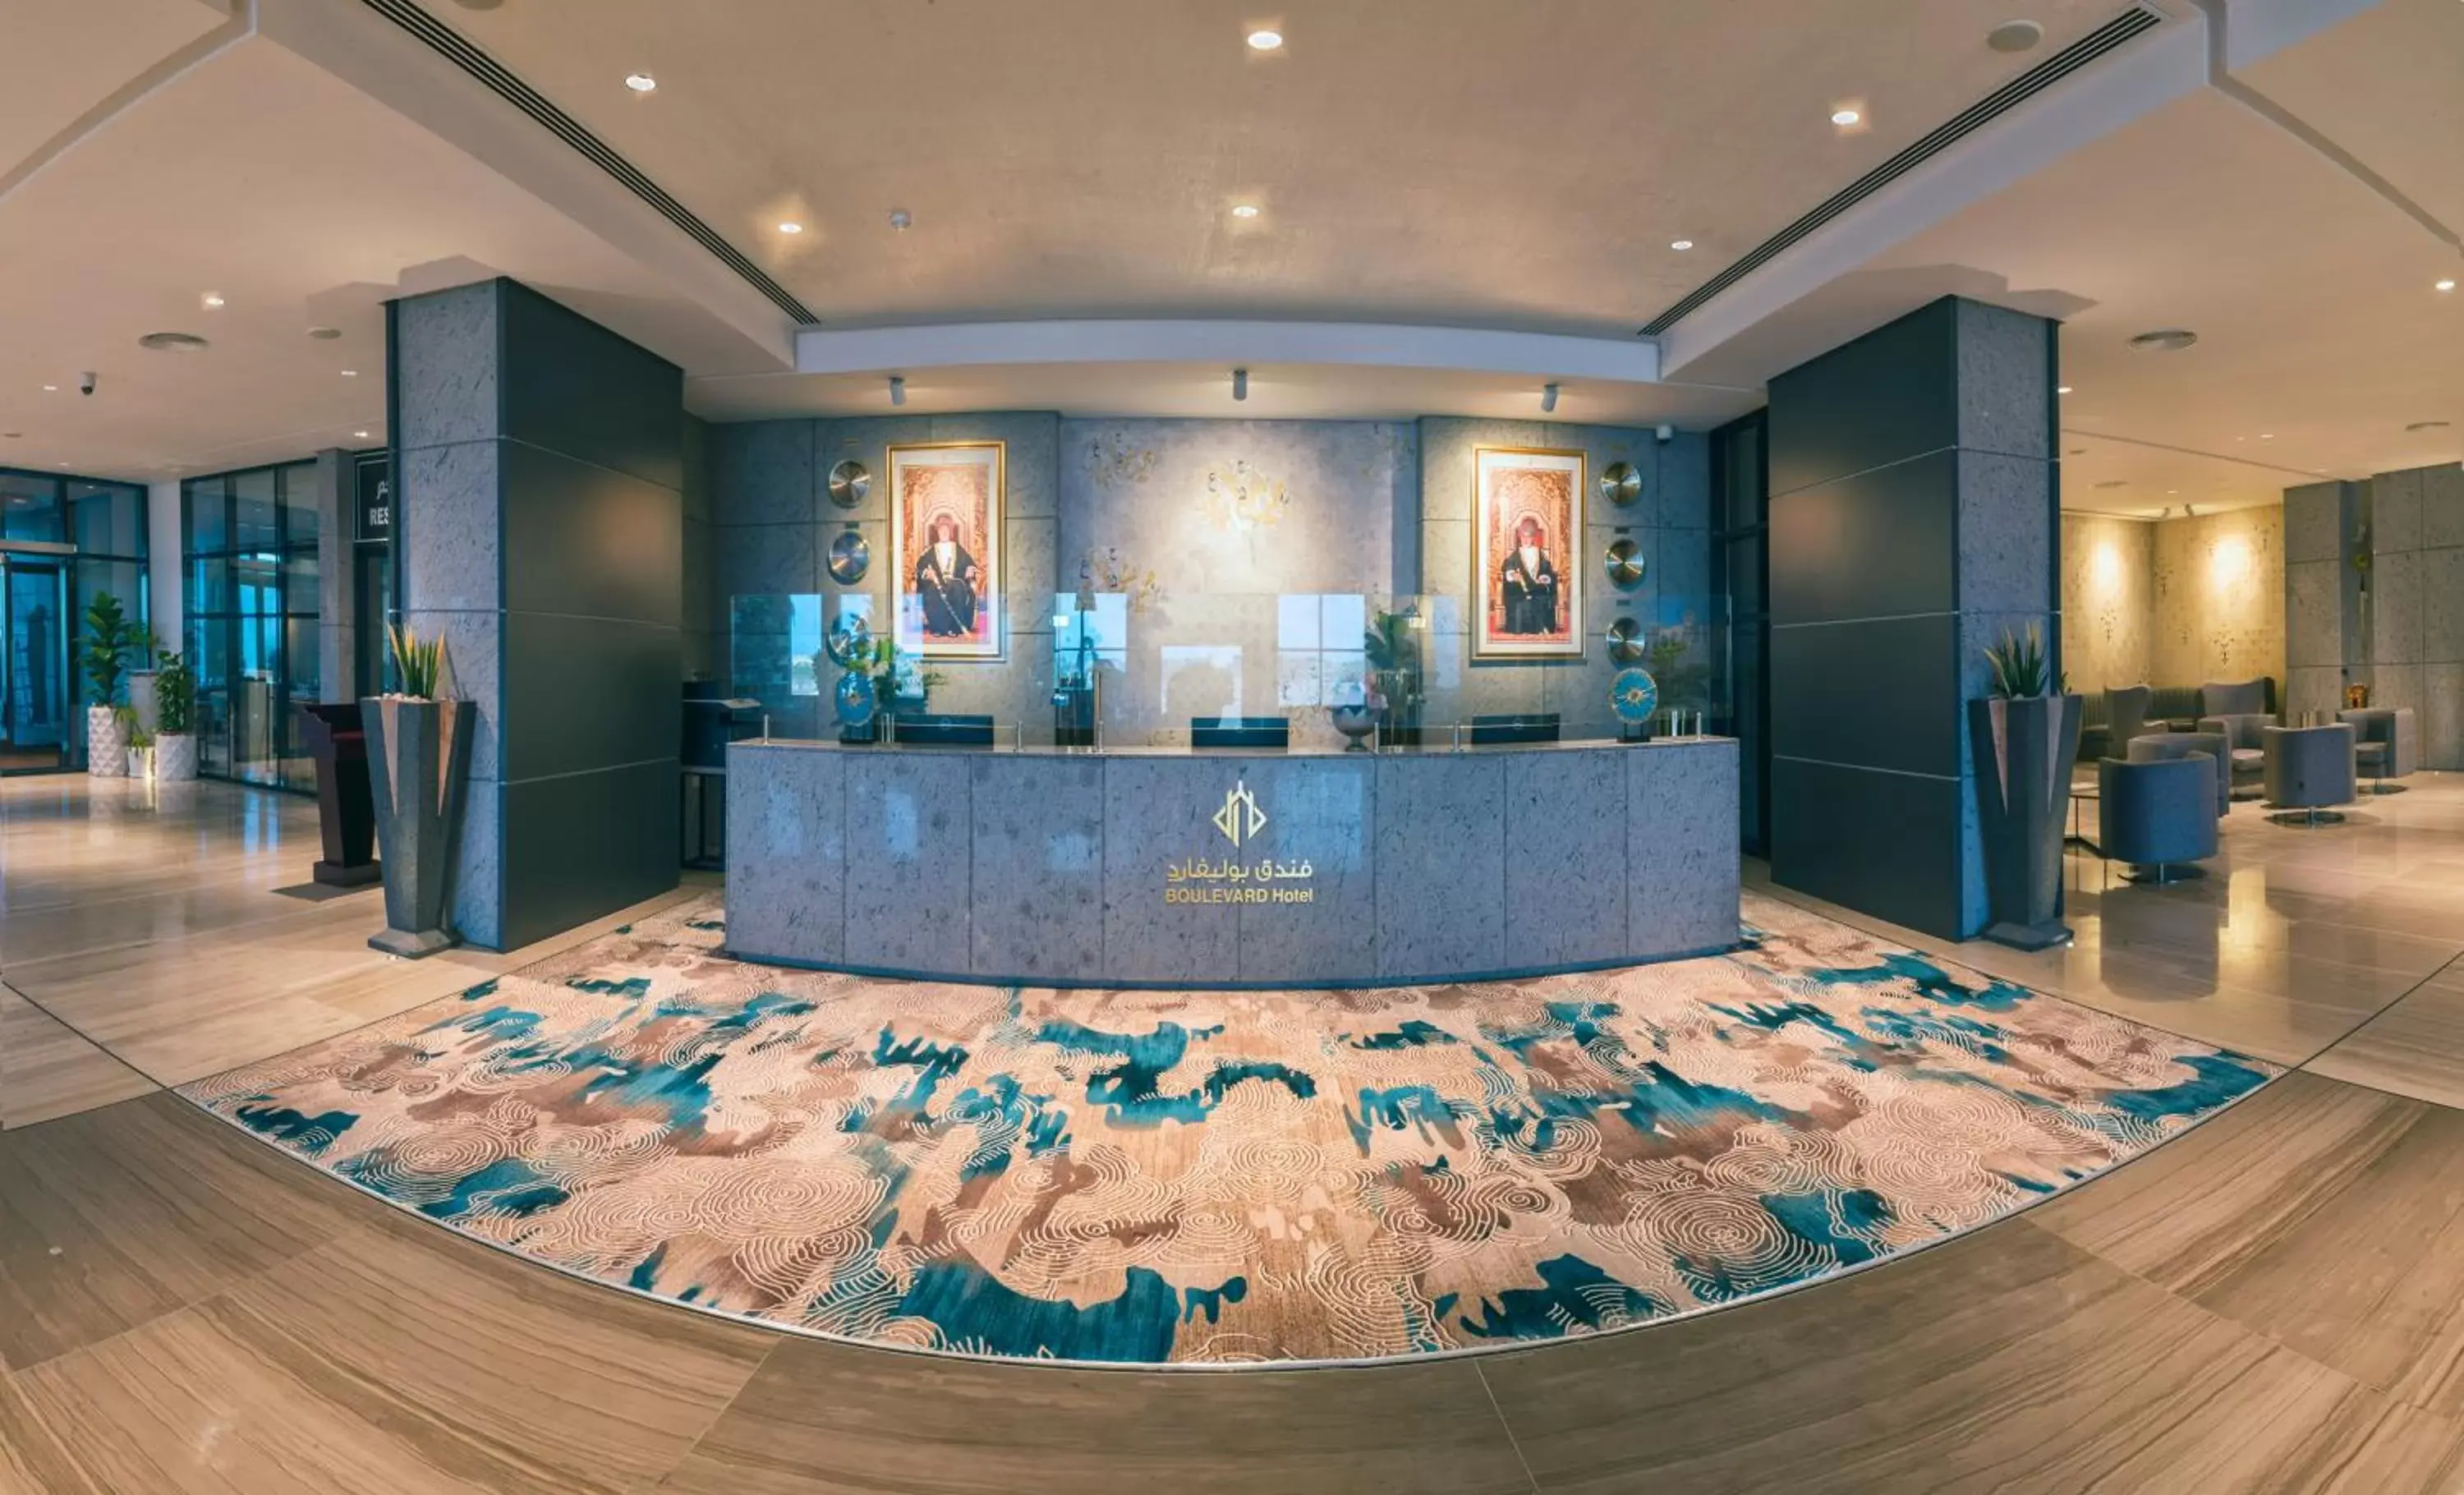 Lobby or reception, Lobby/Reception in Boulevard Hotel Oman